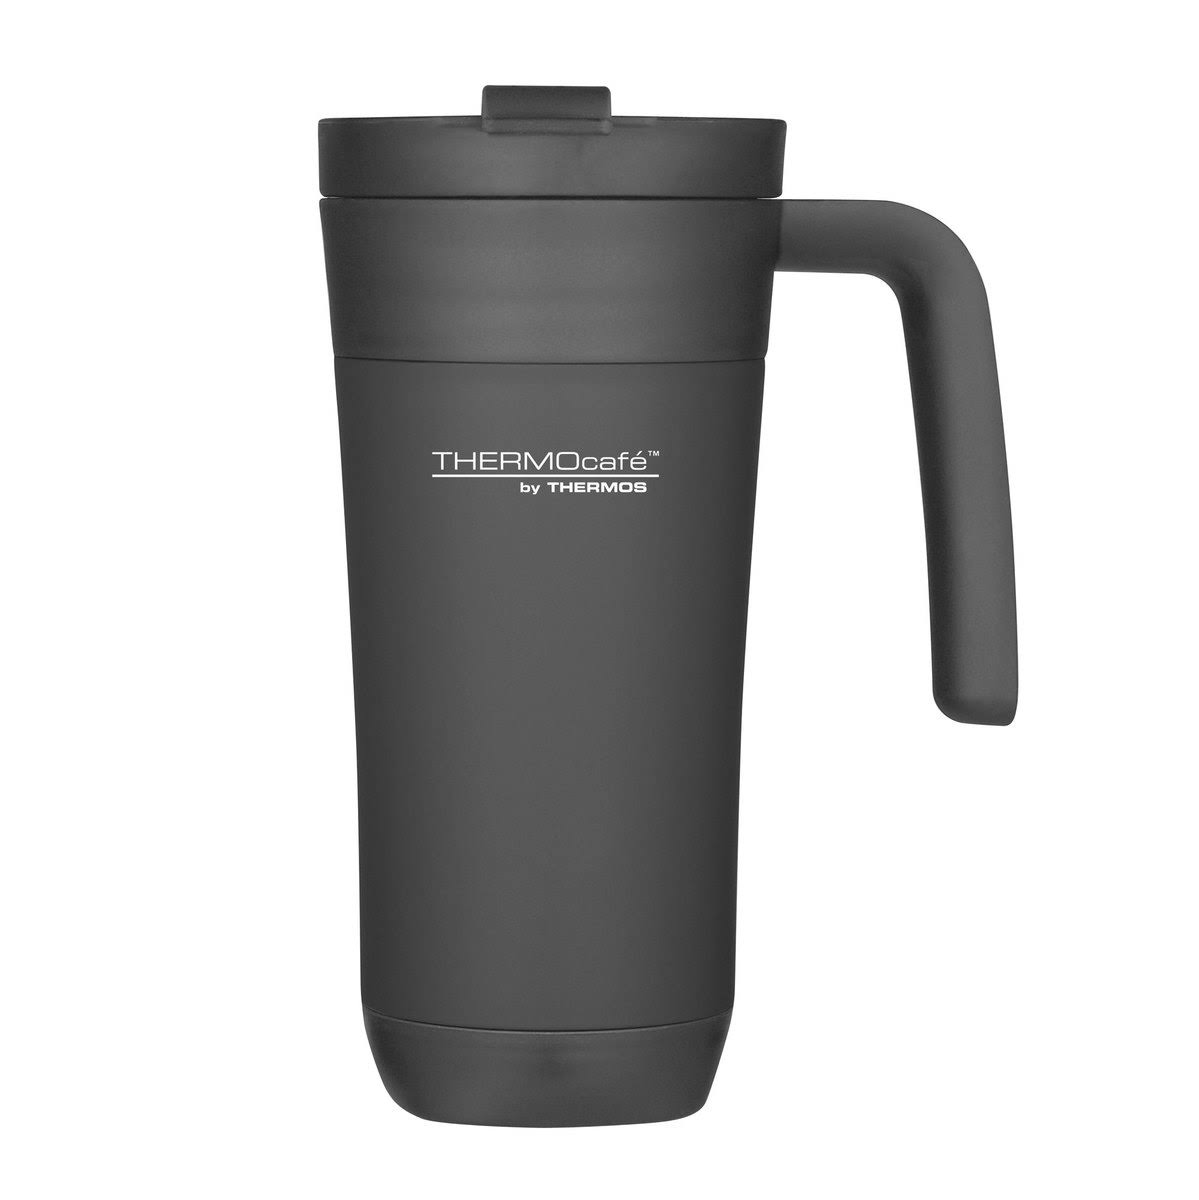 Insulated Travel Mug 14.4oz / 425ml Black - Thermos - ThermoCafé